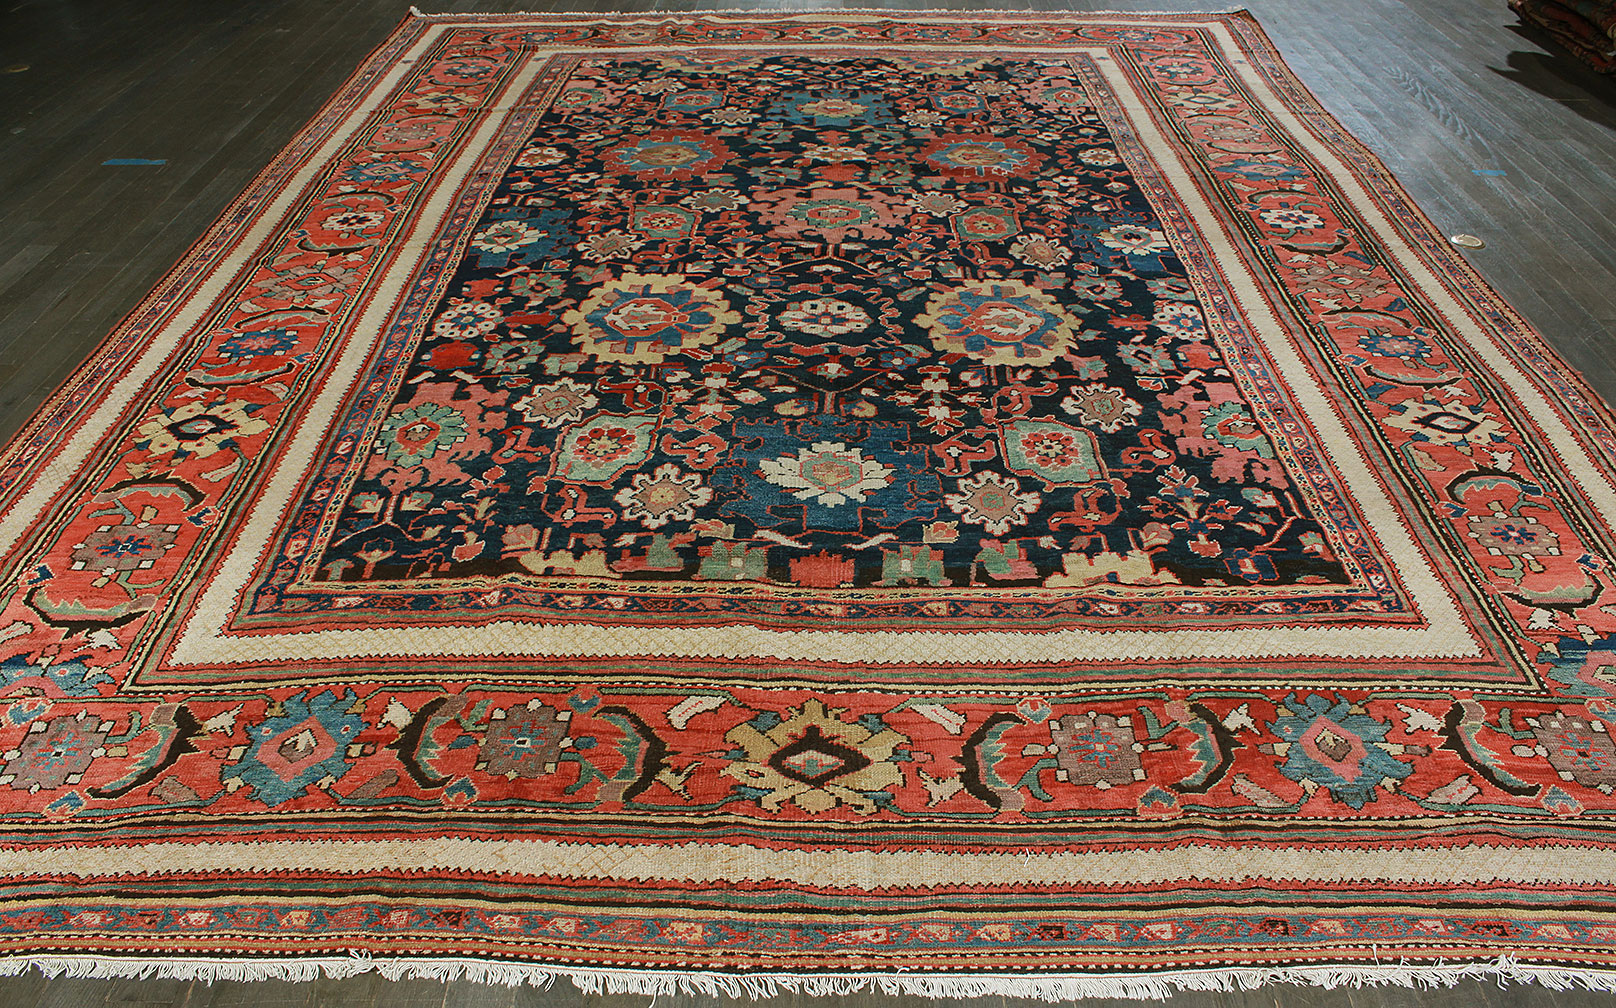 Antique mahal Carpet - # 51463